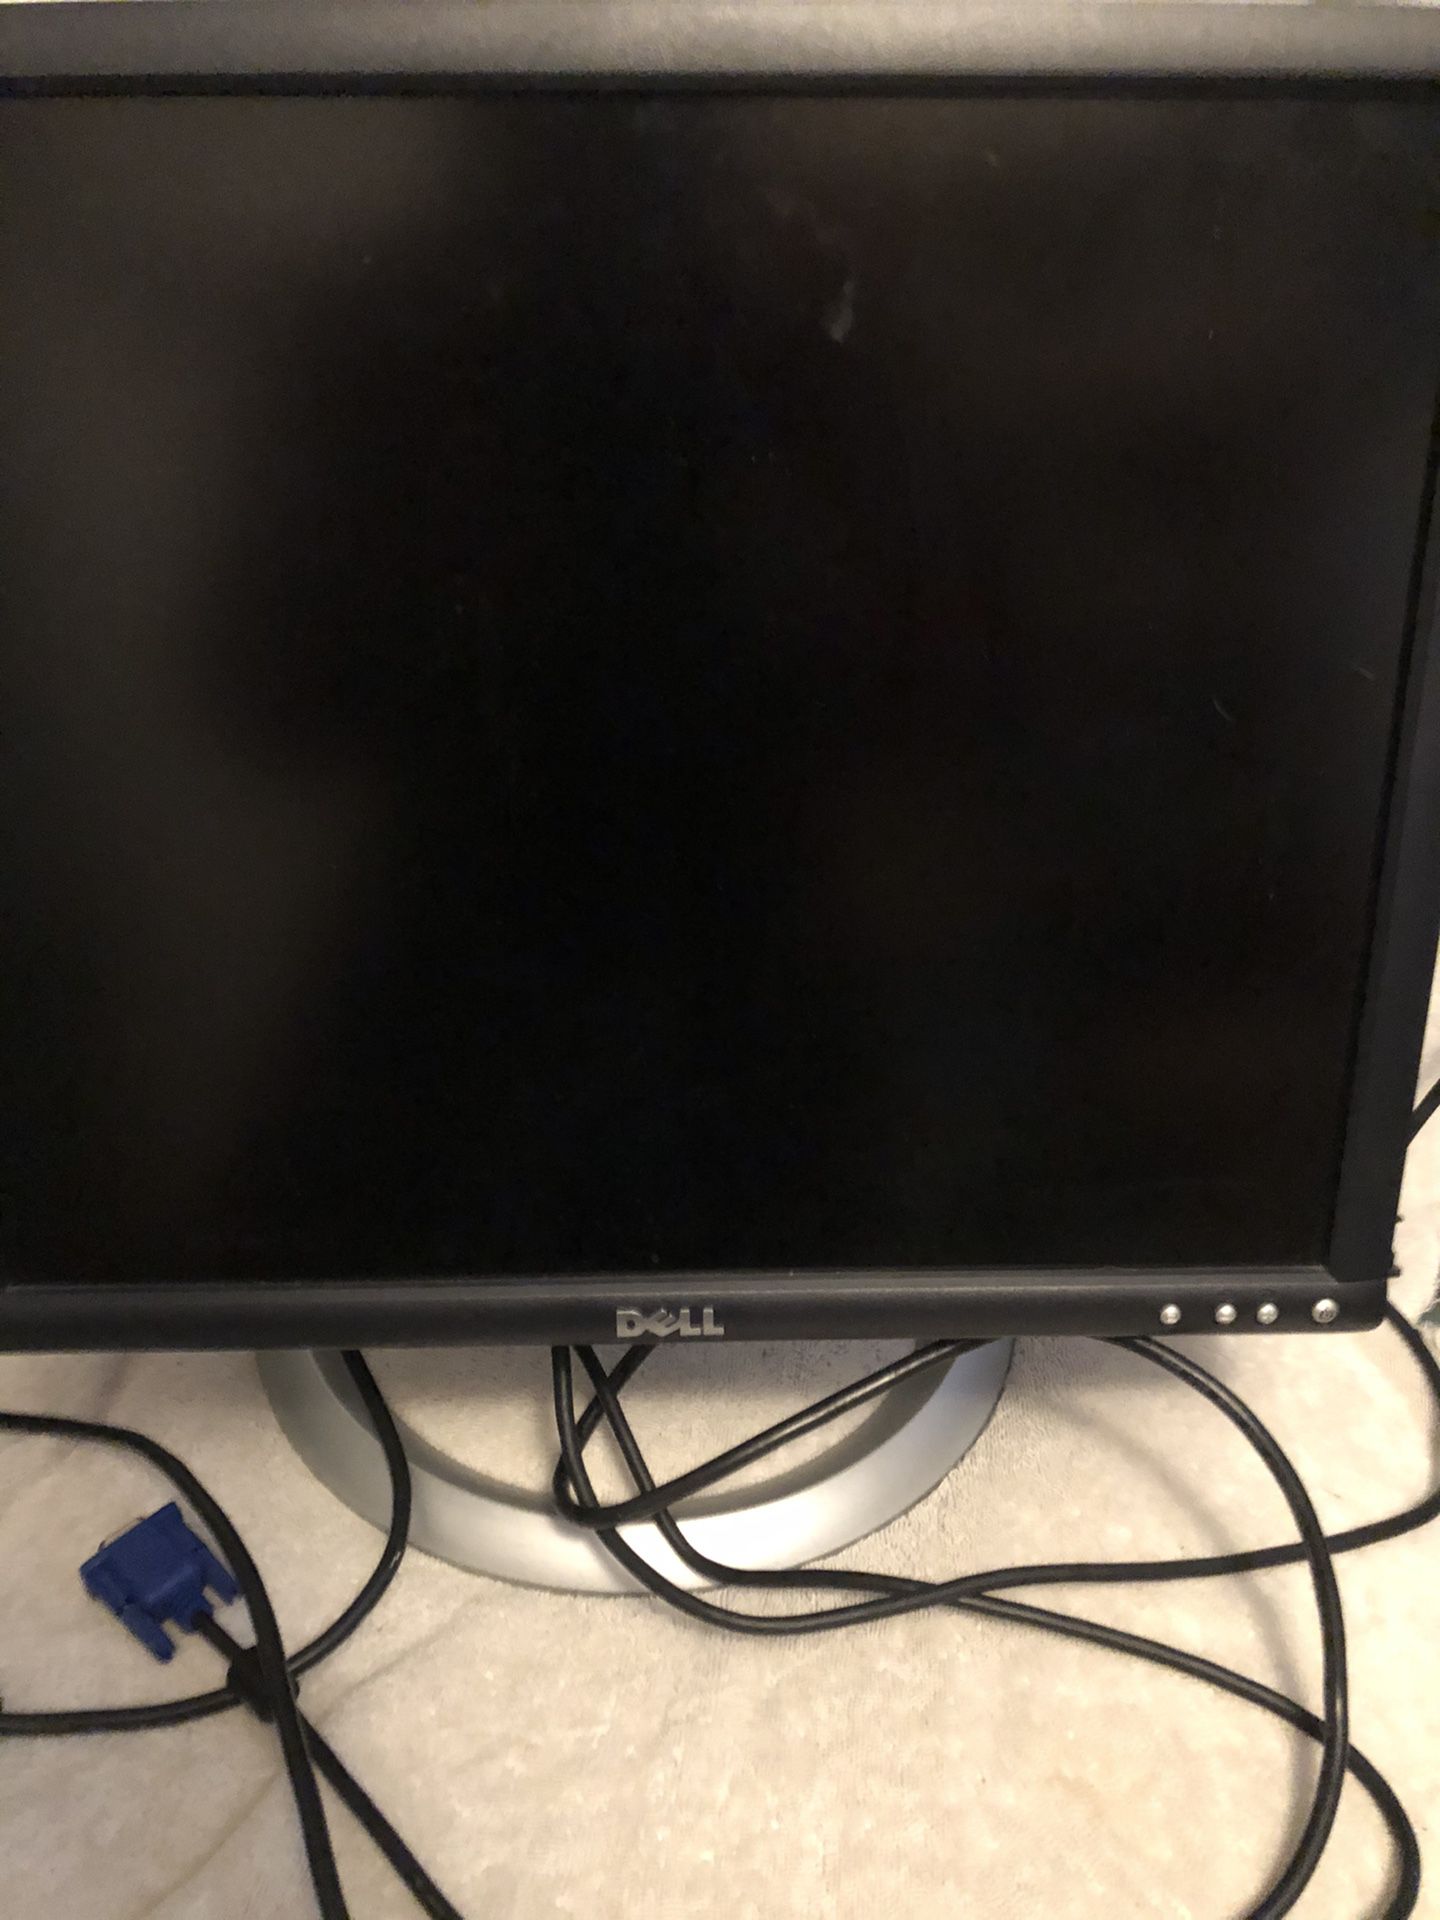 Dell UltraSharp (1905FP) 1280 x 1024 Resolution Desktop 19" LCD Monitor